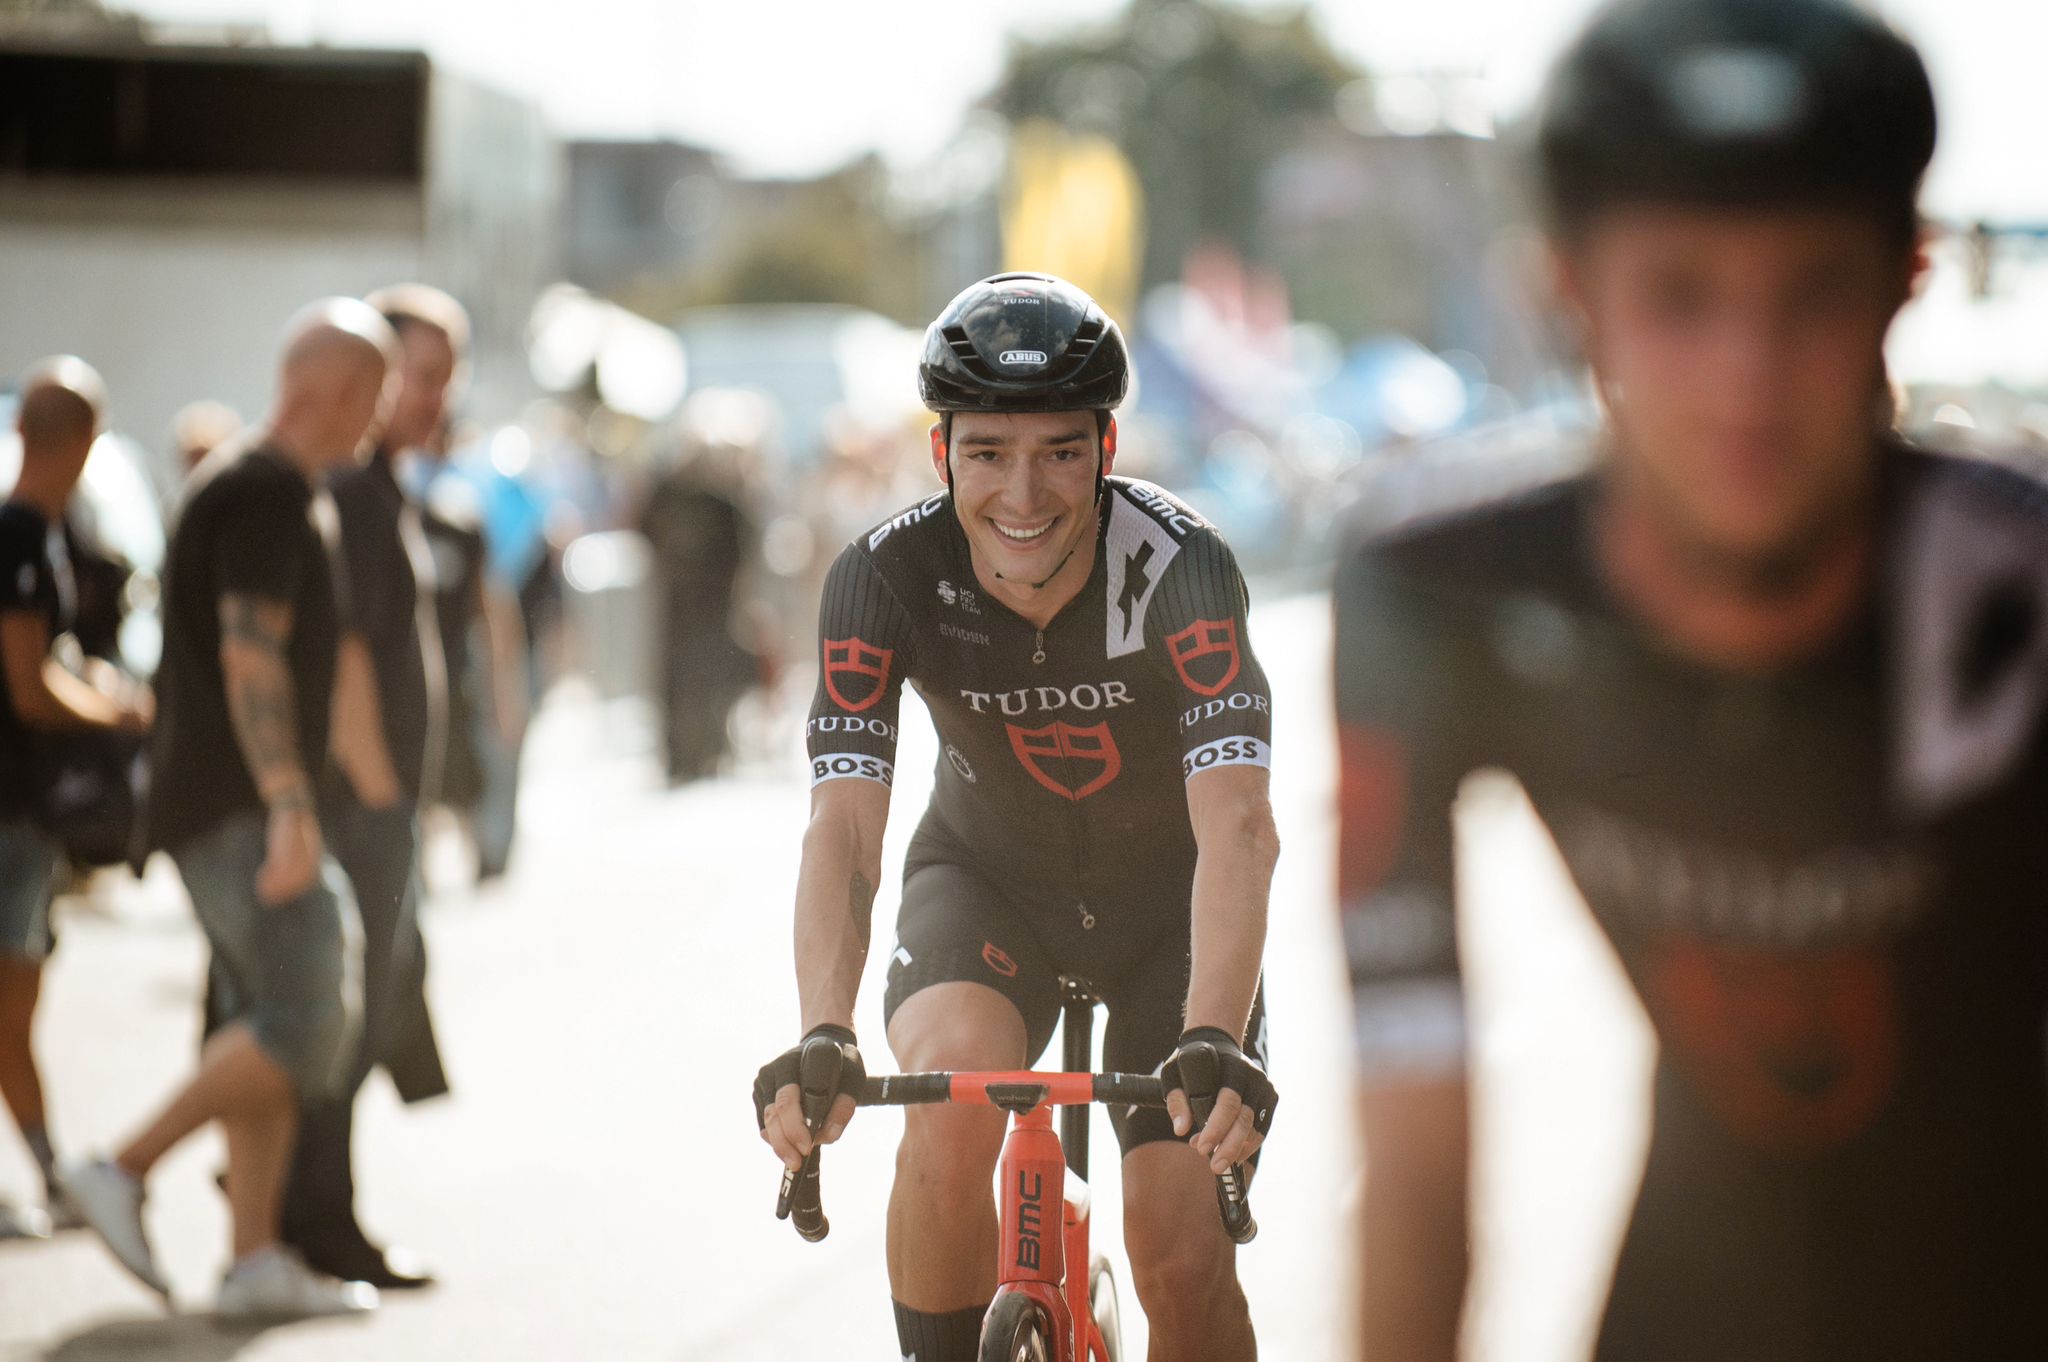 Cyclisme: La 1ère saison de Simon Pellaud chez "Tudor" marquée par des émotions fortes